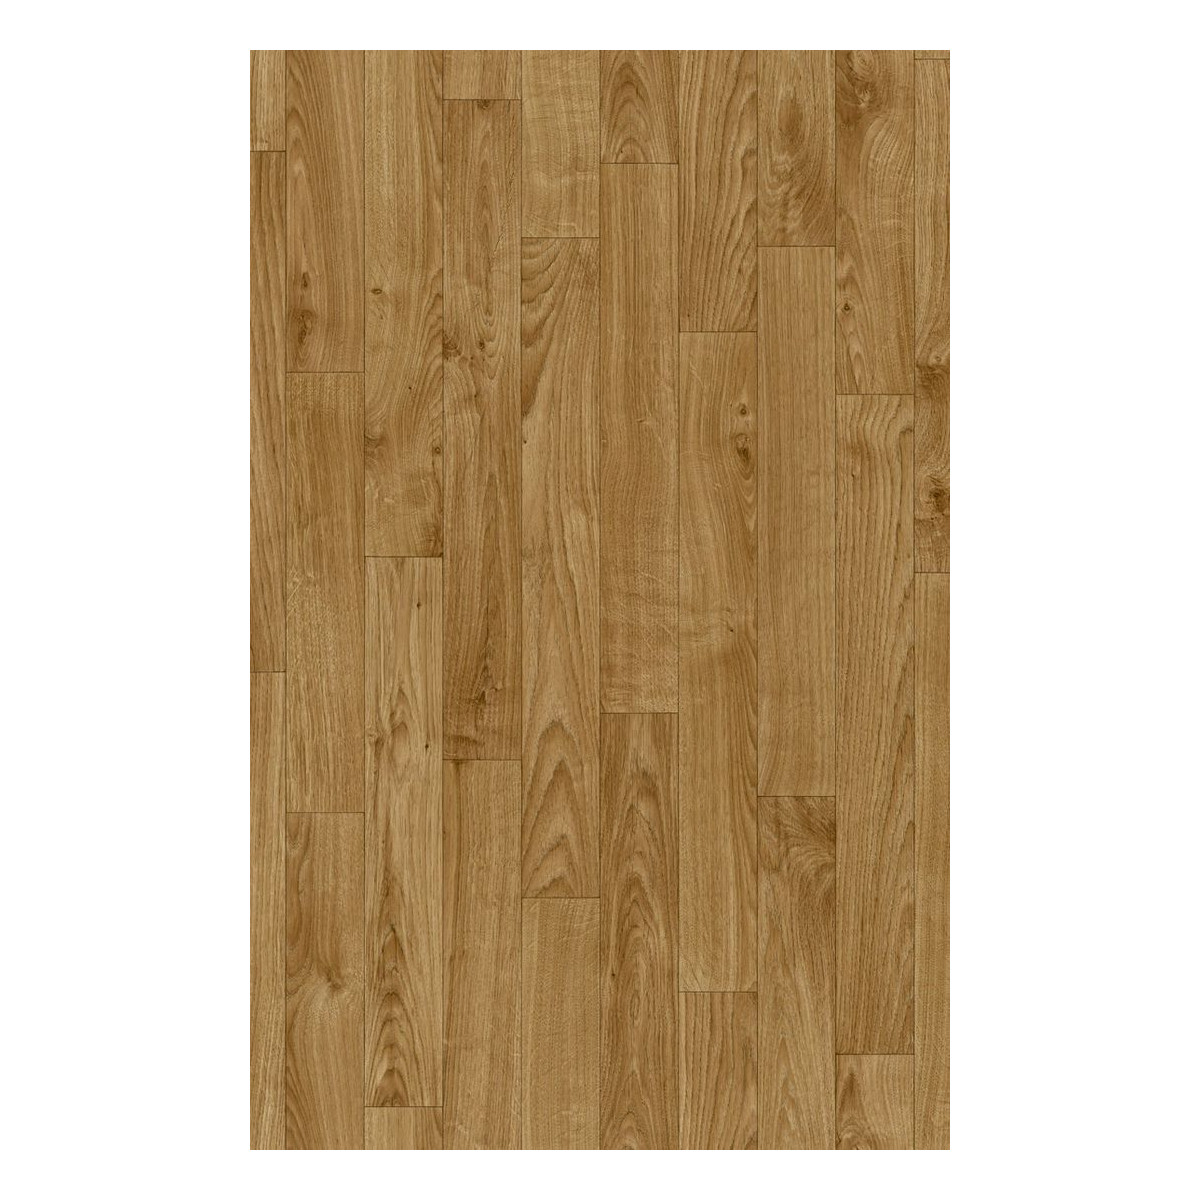 PVC podlaha Ambient Honey Oak 636M - dub